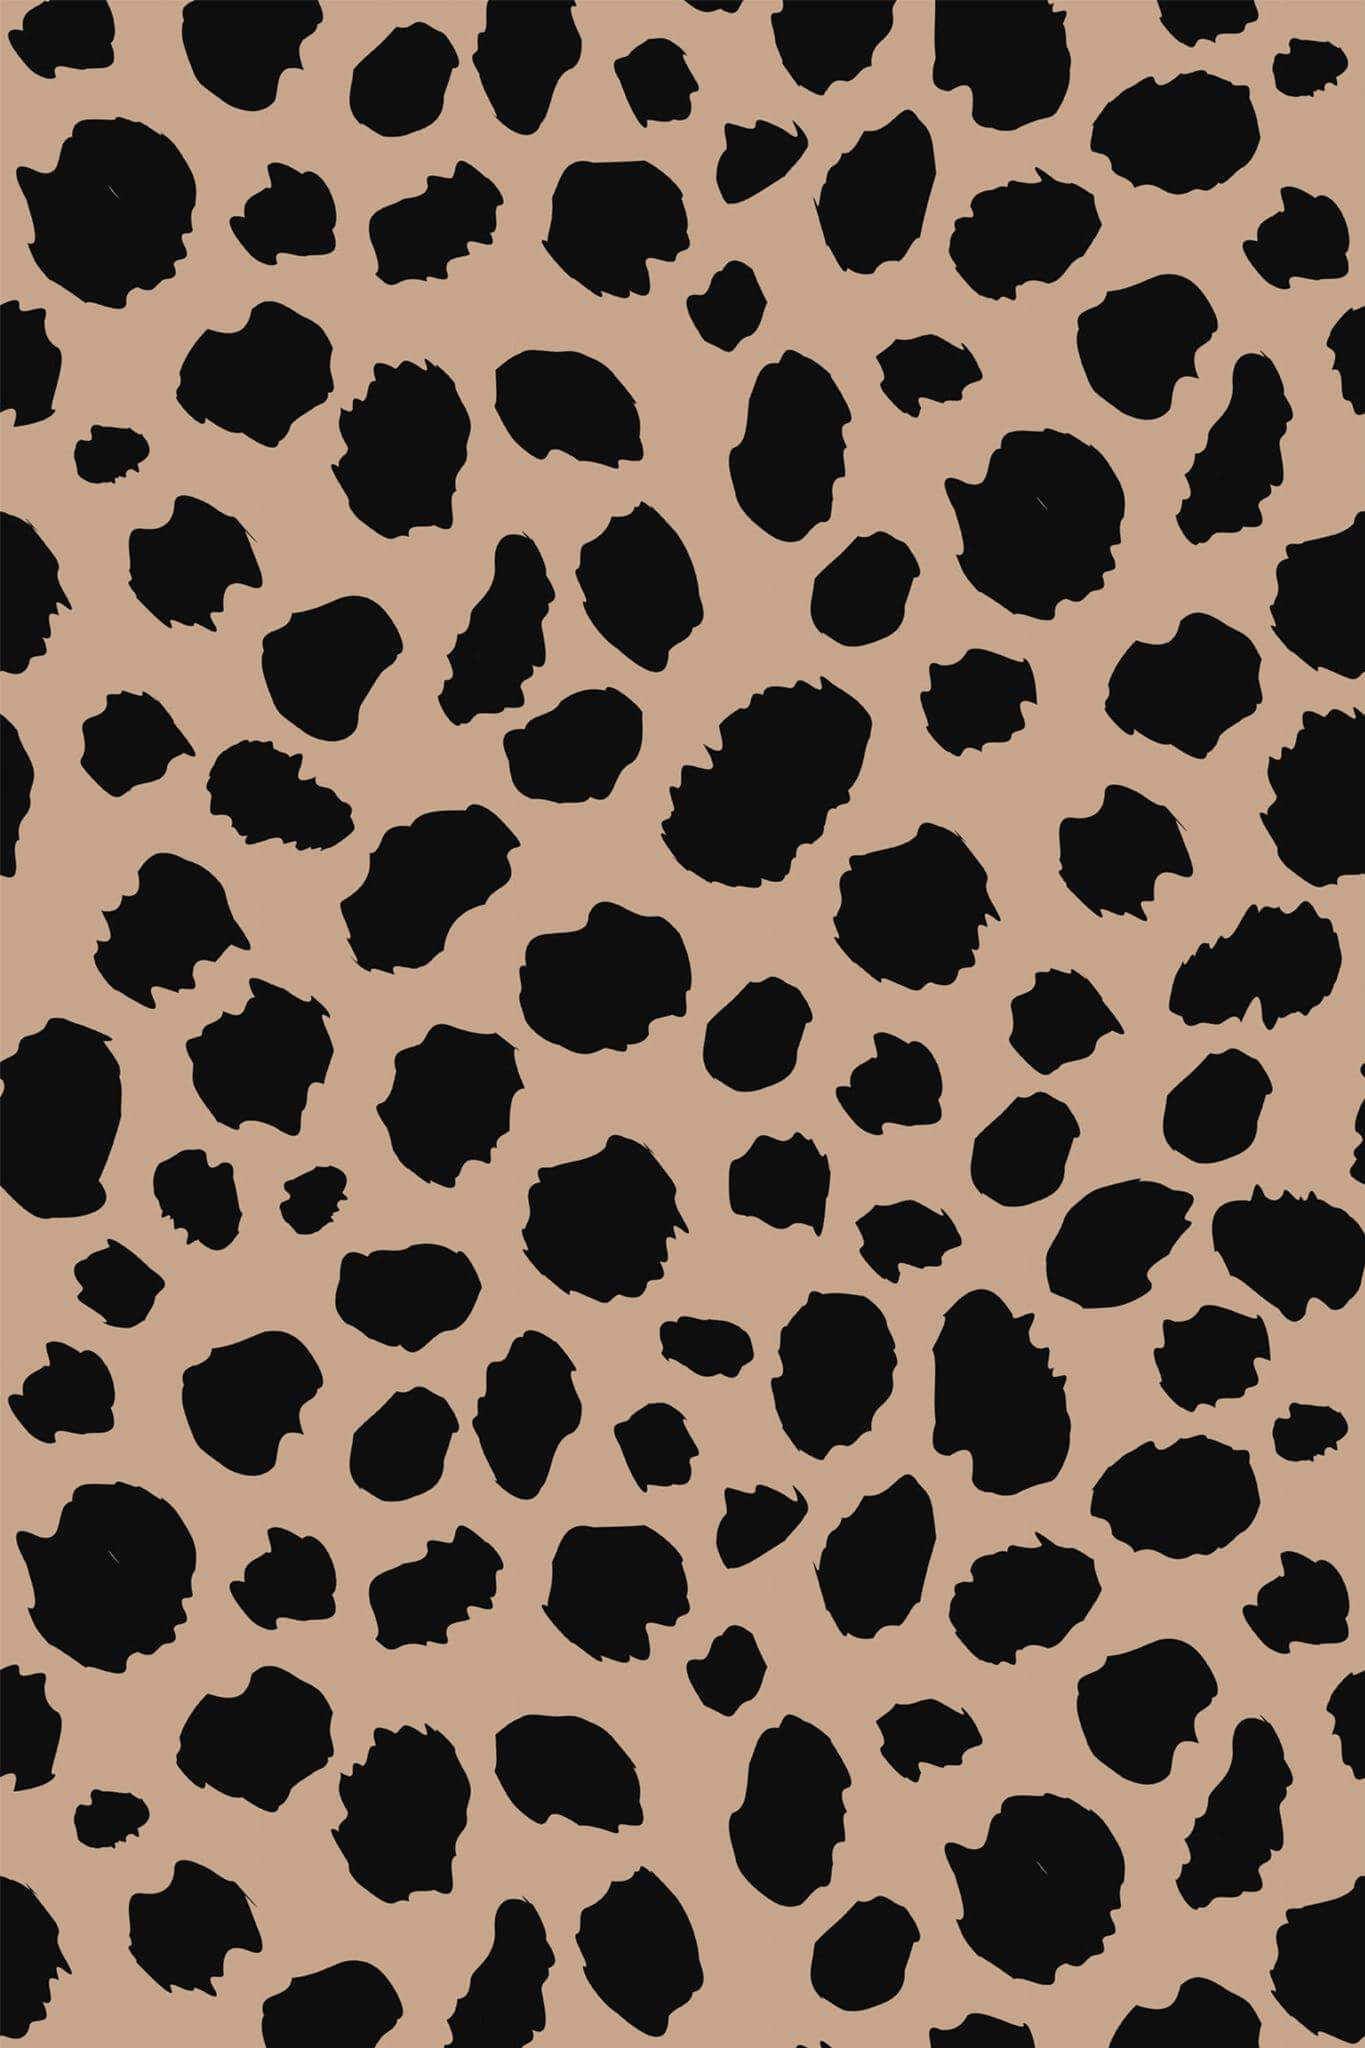 Aesthetic cheetah print Wallpaper